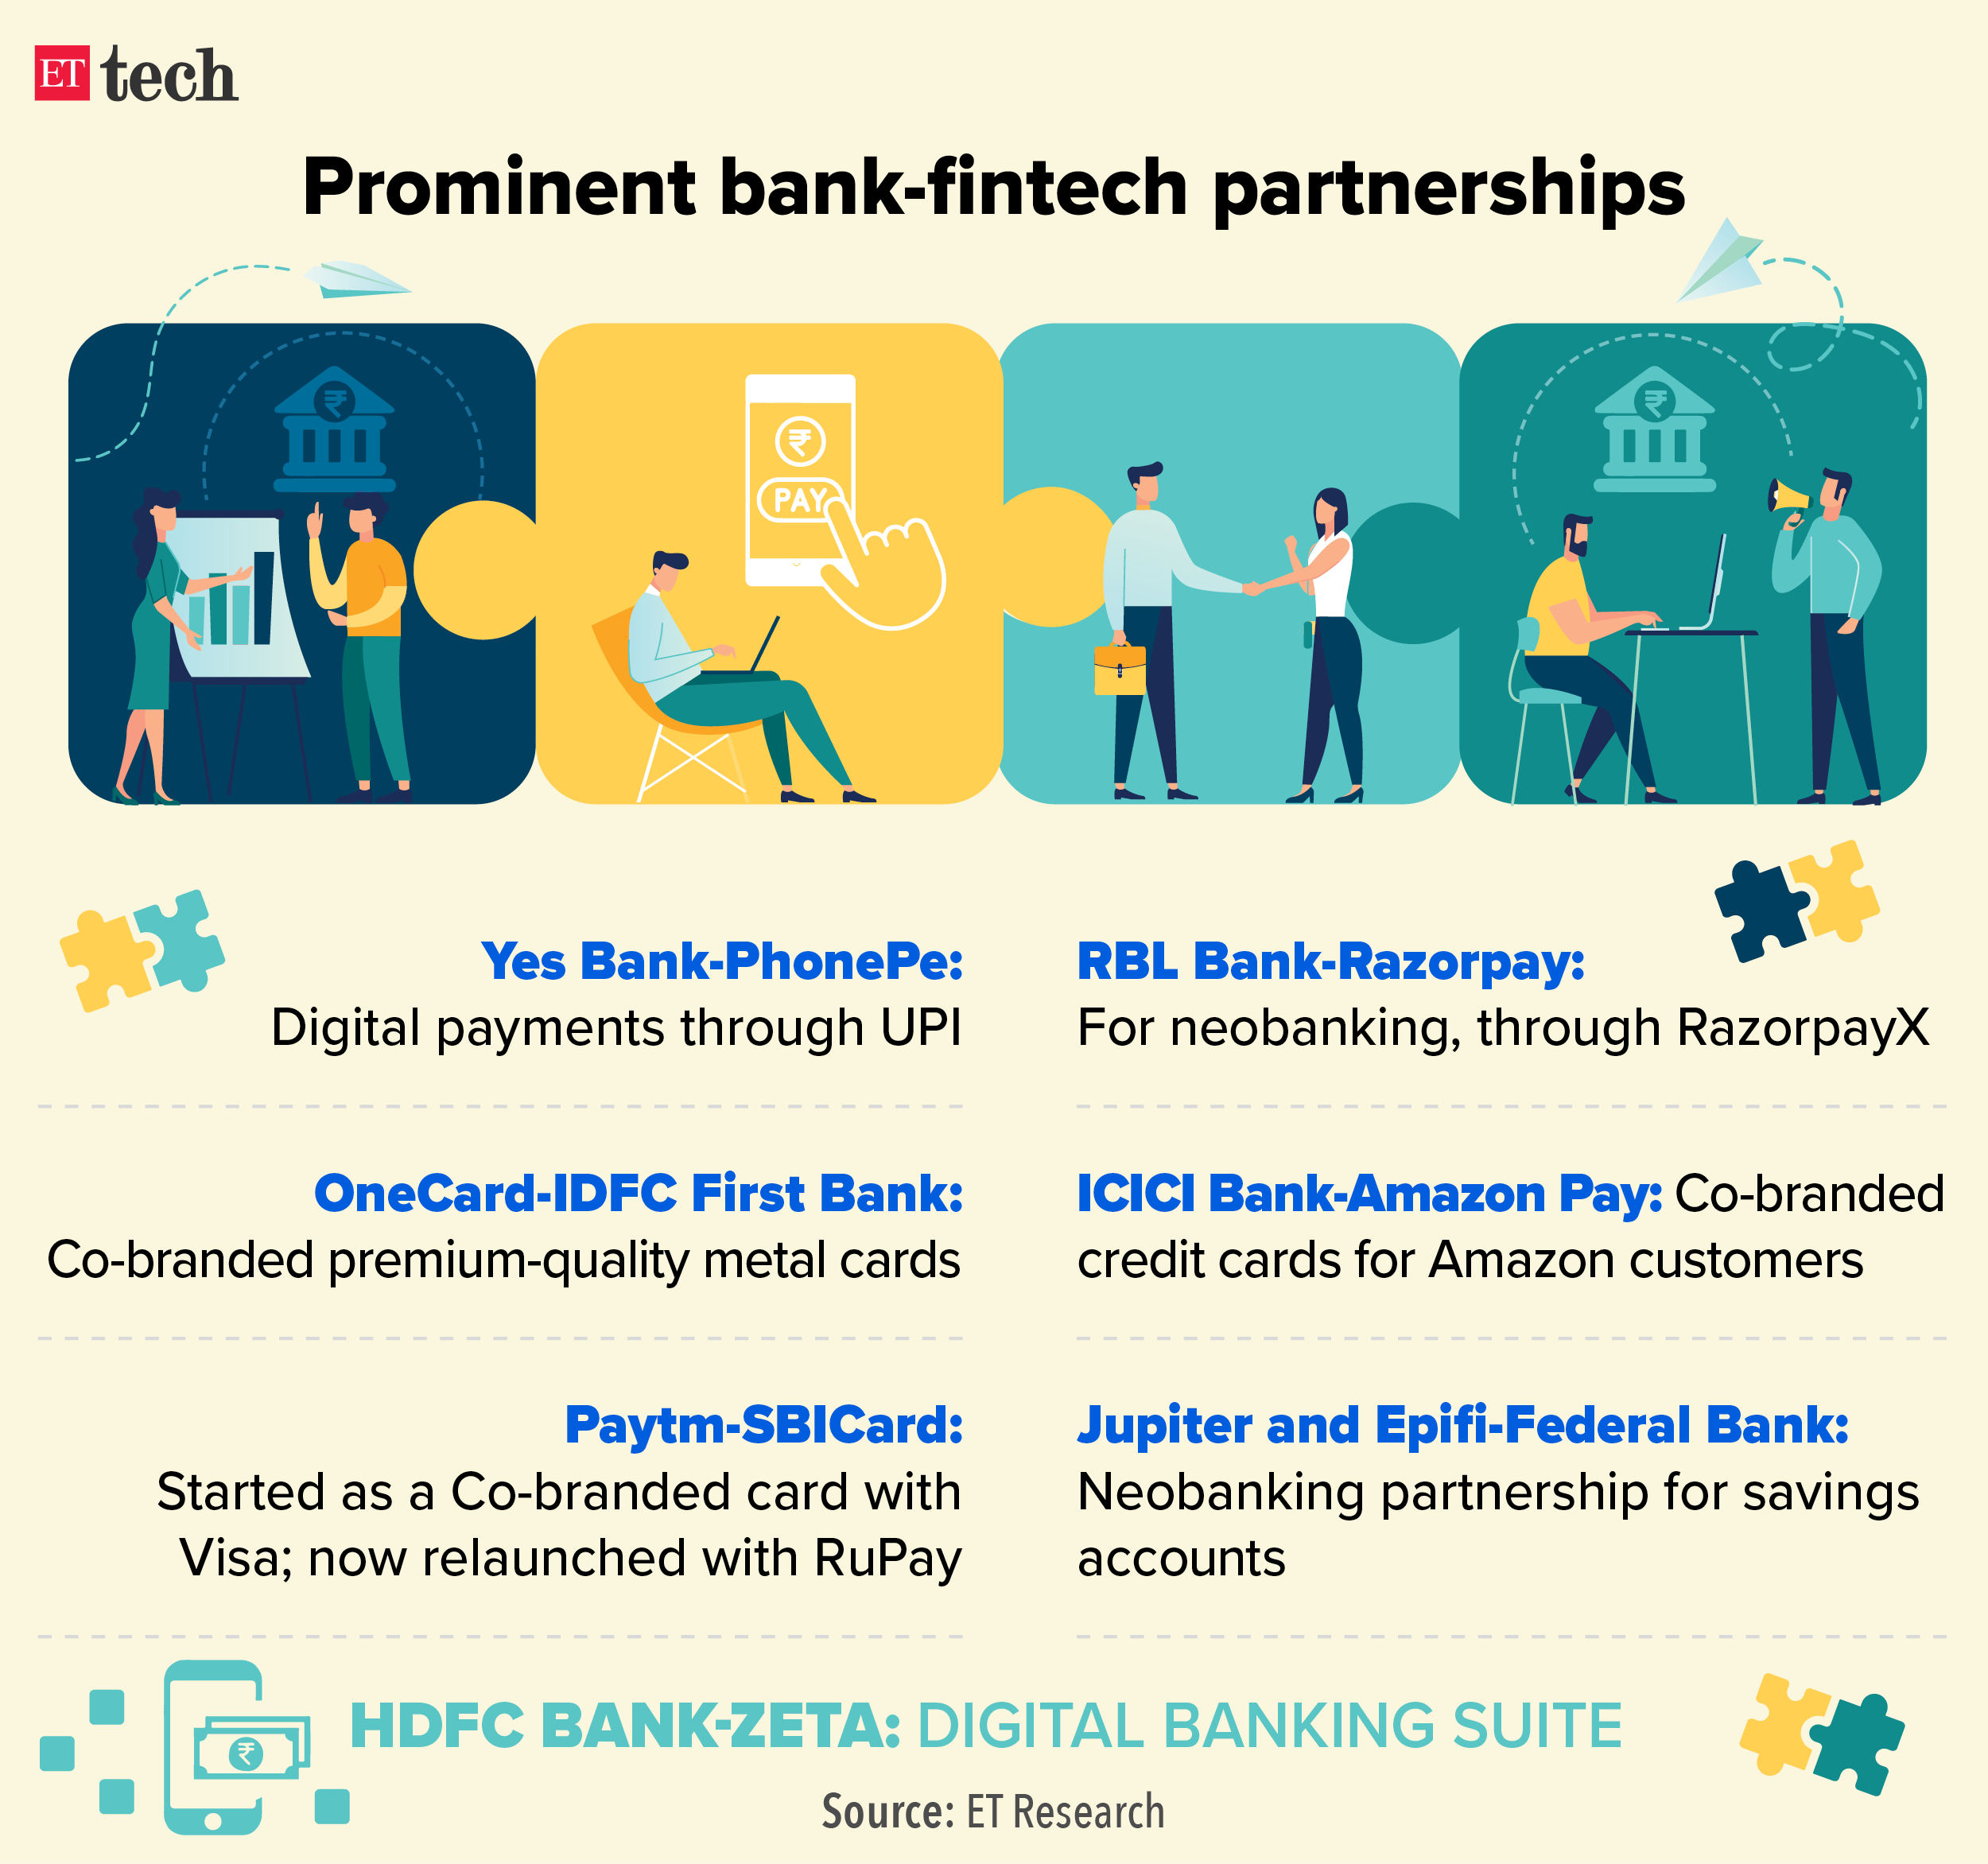 Prominent bank-fintech partnerships_Graphic_ETTECH